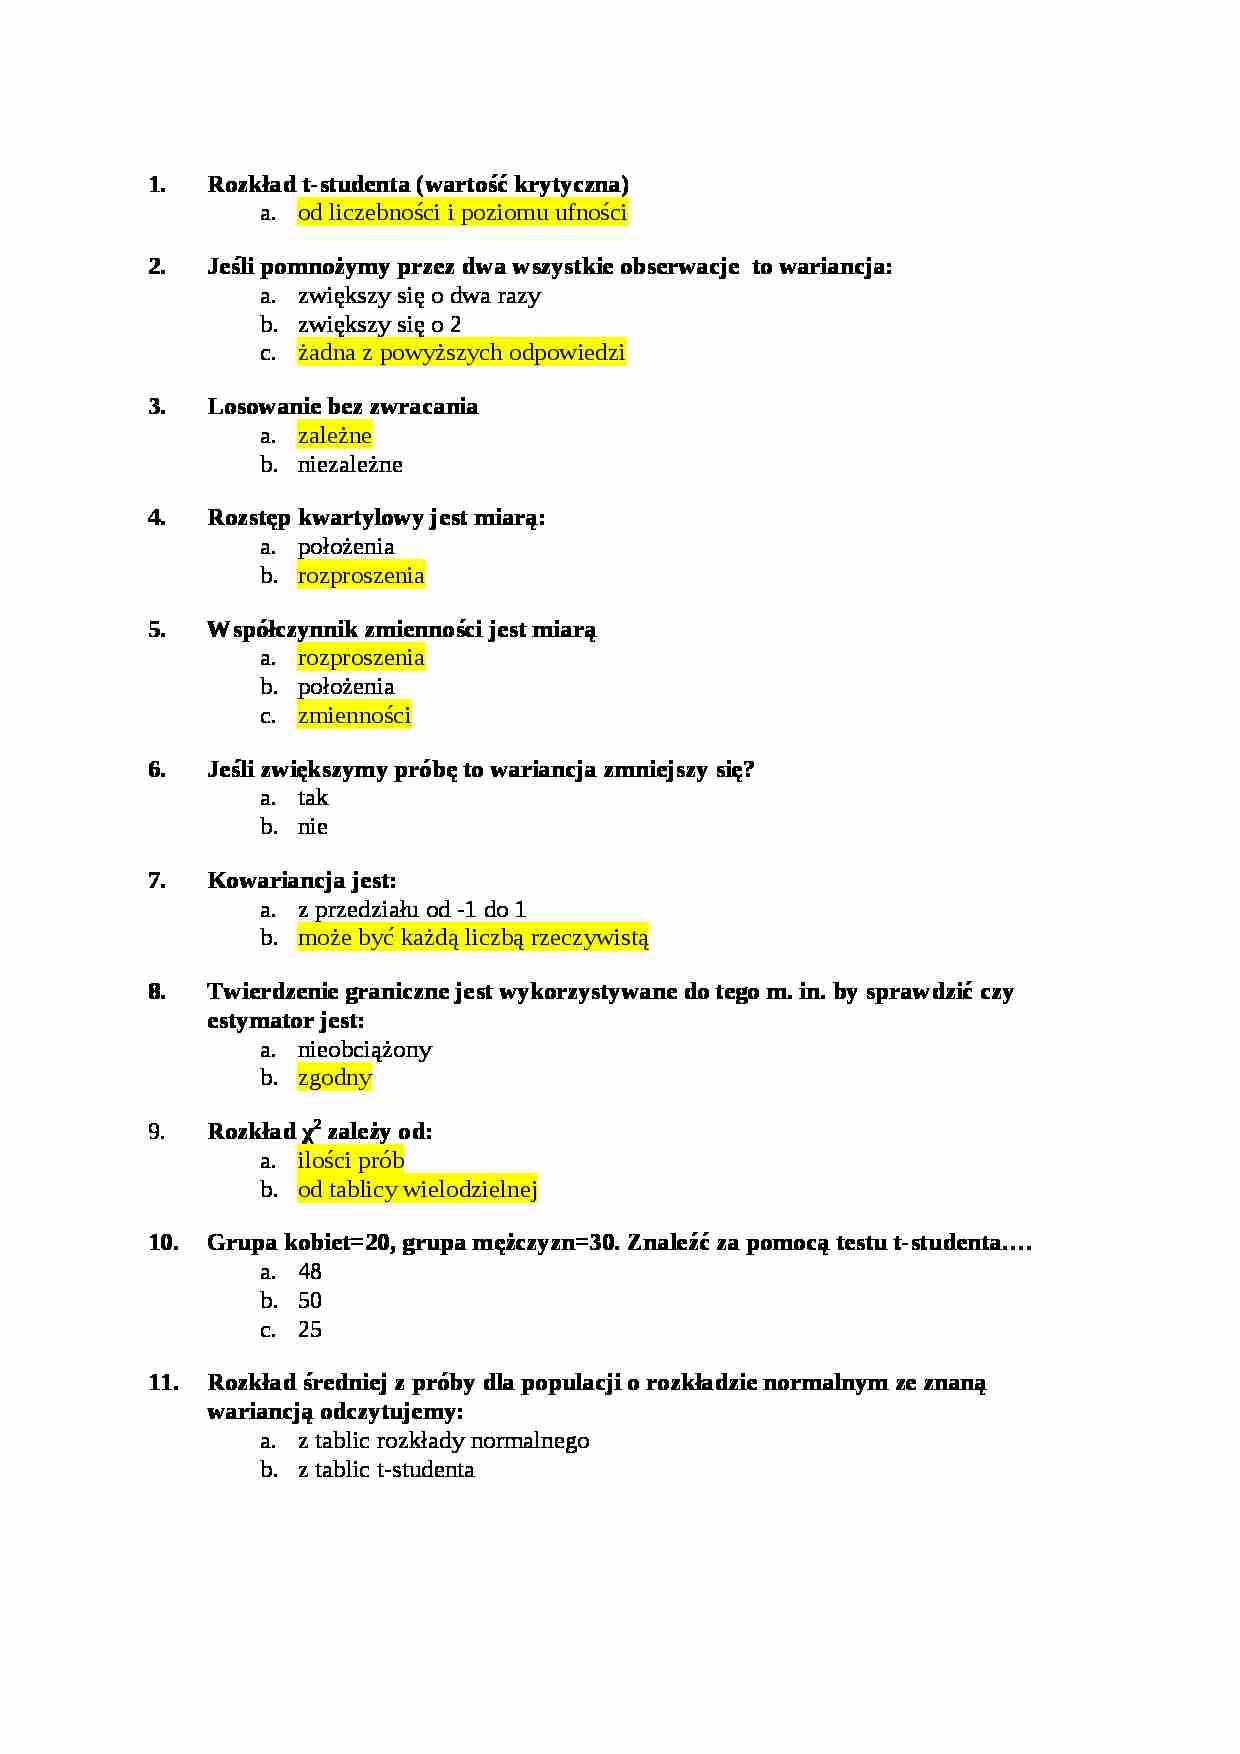 Statystyka opisowa - pytania egzamin inne, (sem III) - strona 1